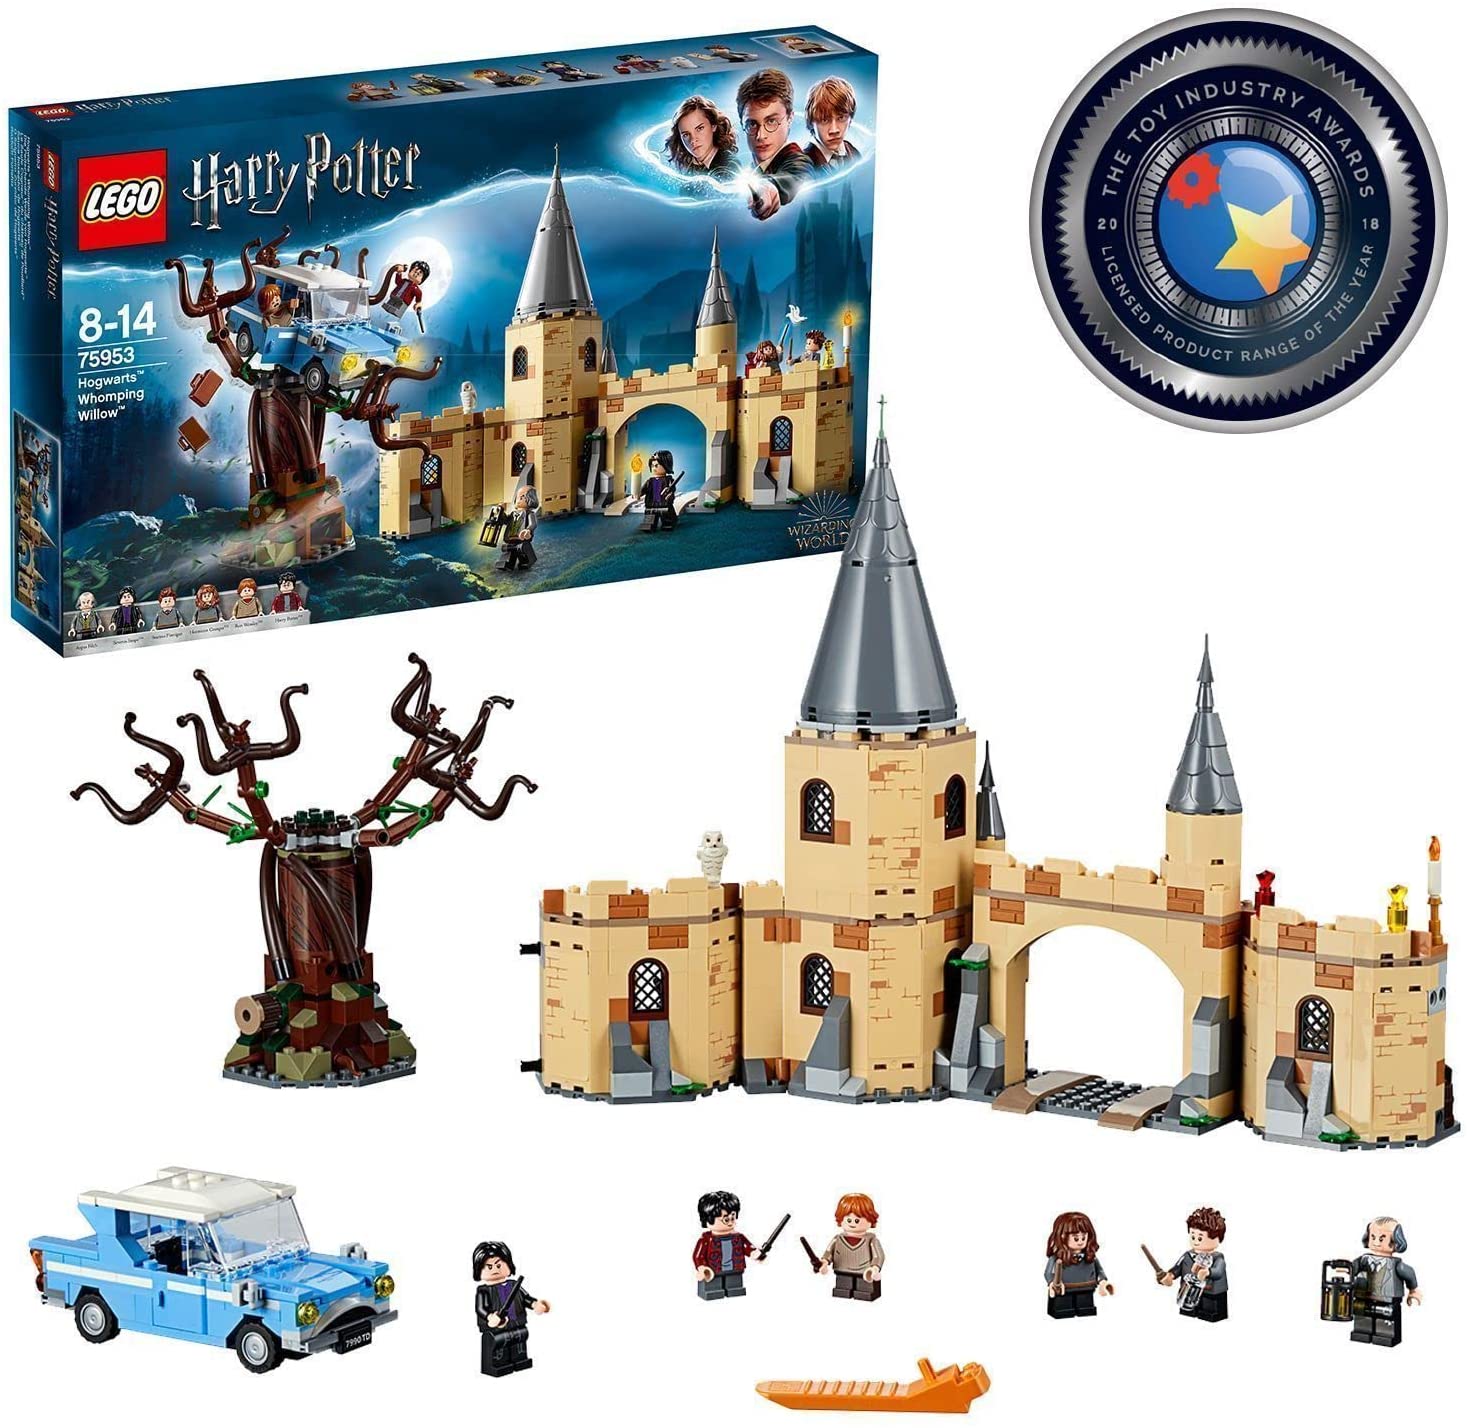 Bild zu Lego Harry Potter Die Peitschende Weide von Hogwarts (75953) für 49,79€ (Vergleich: 60,69€)